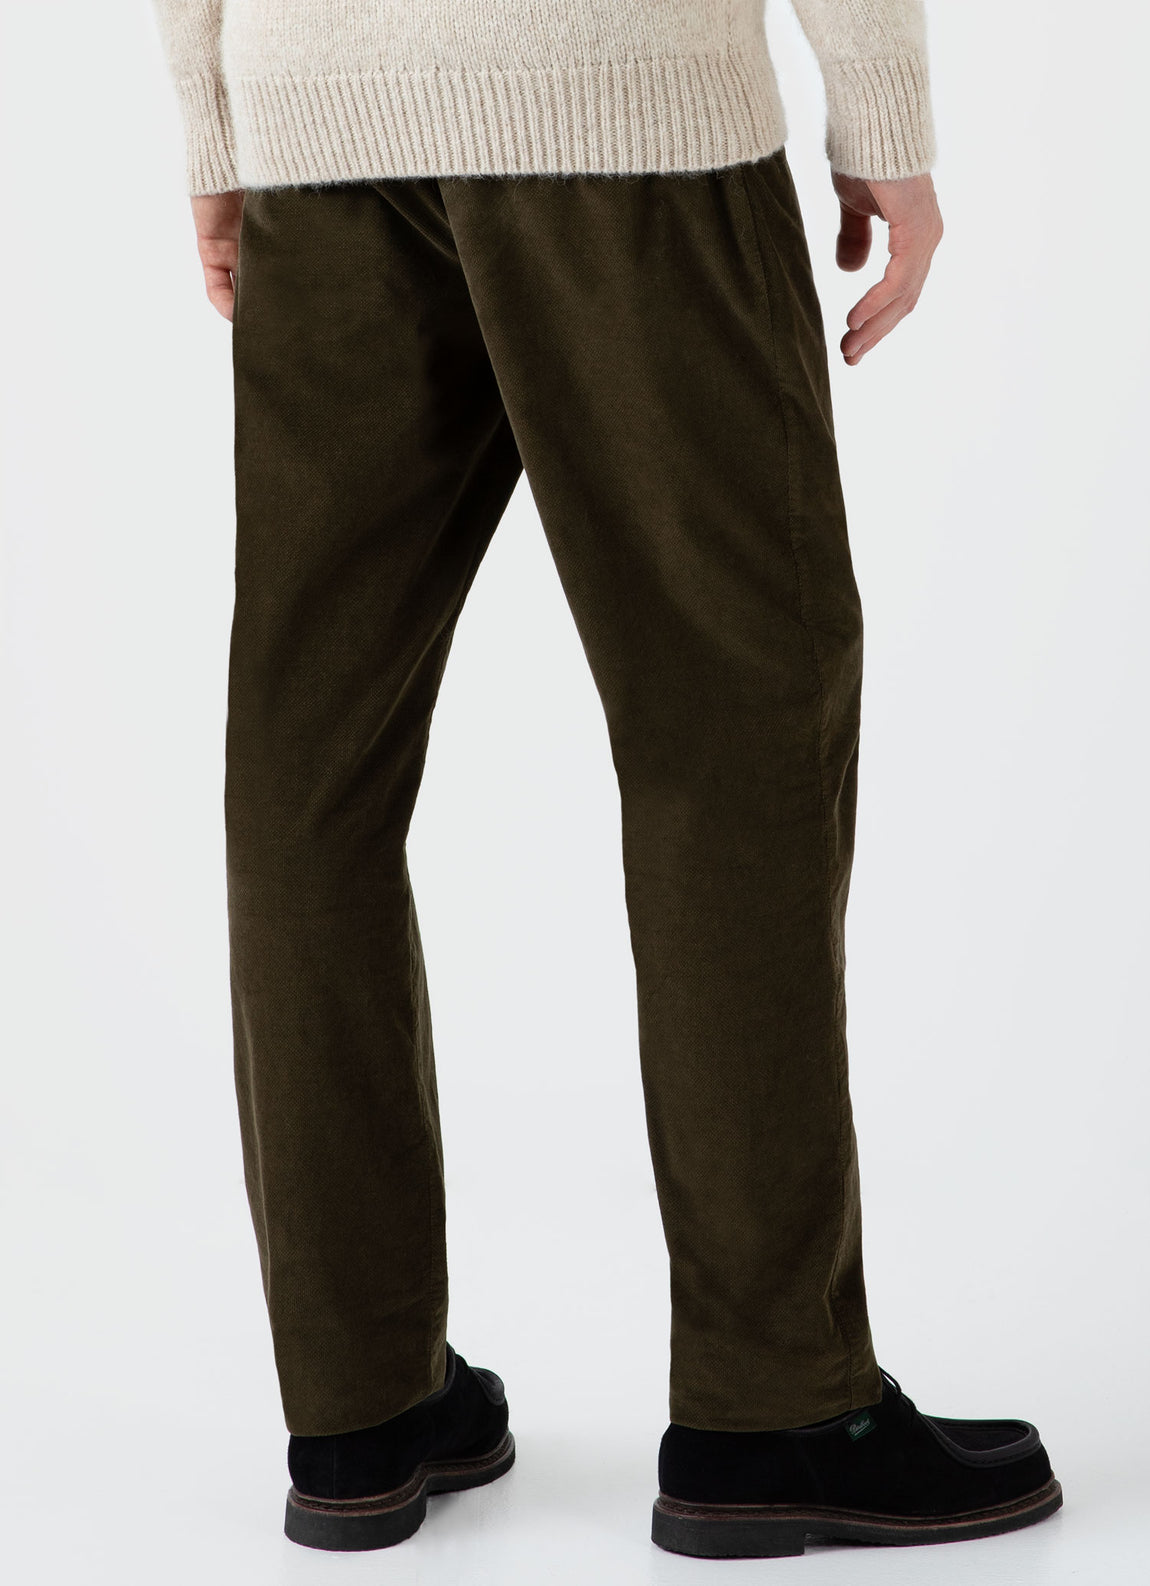 Men's Cellular Cord Drawstring Trouser in Dark Olive | Sunspel